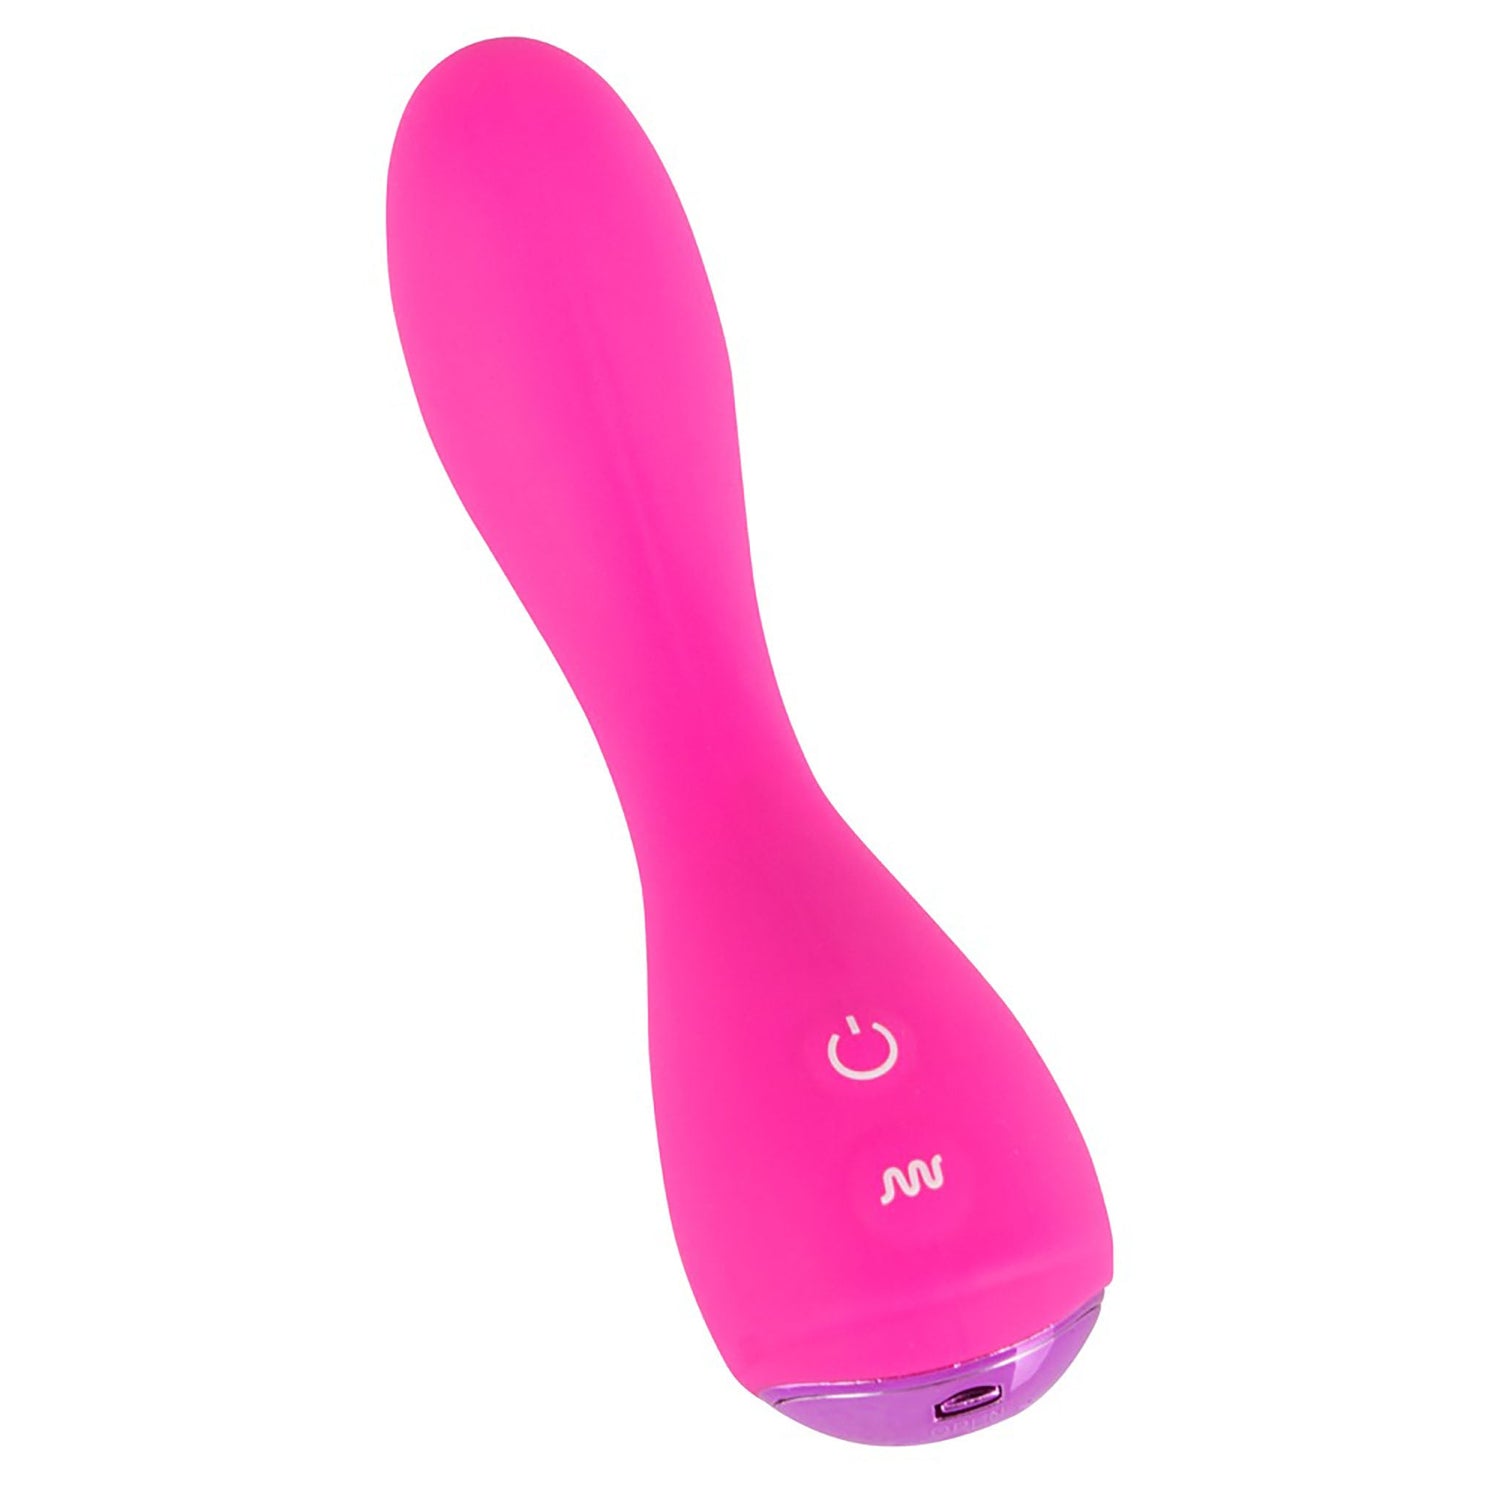 G-Spot Vibrator in pink von Sweet Smile, schräg, ladebuchse zu sehen